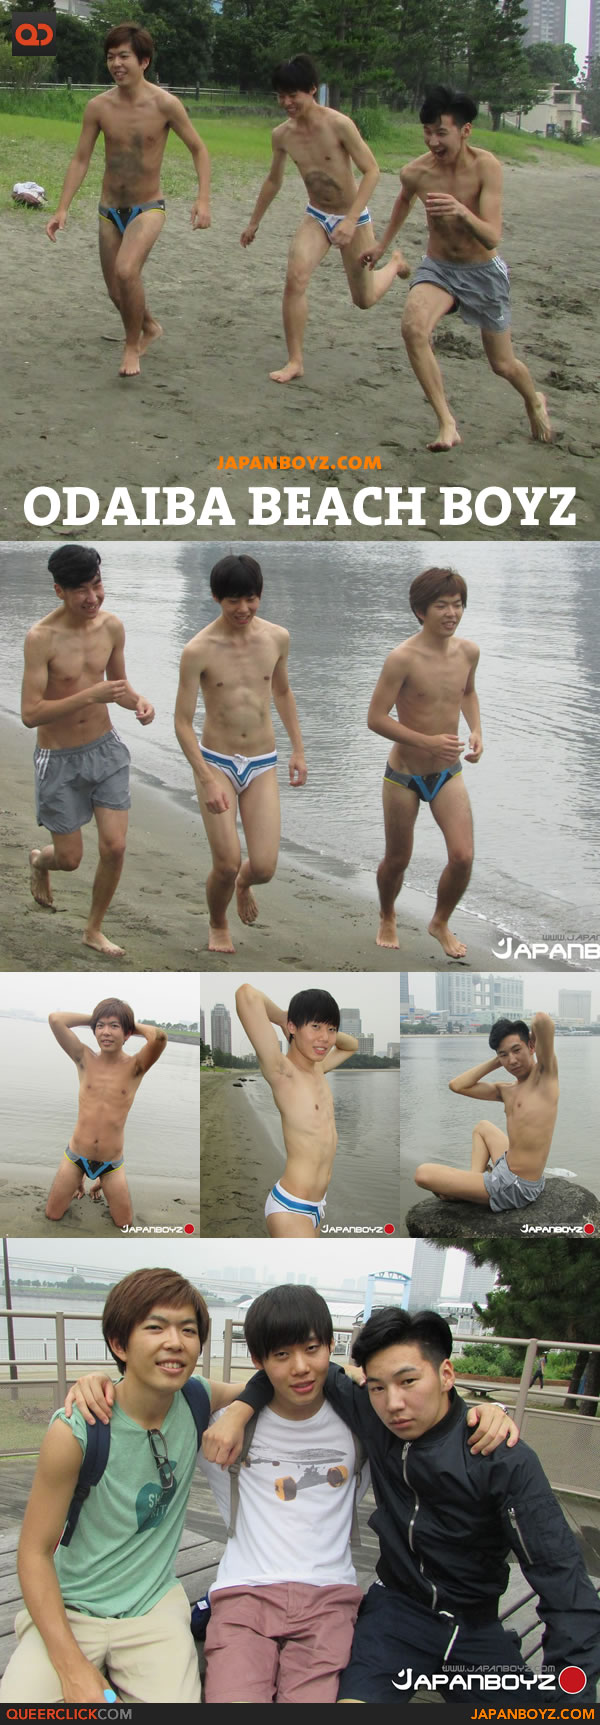 japanboyz-odaiba-beach-boy-1